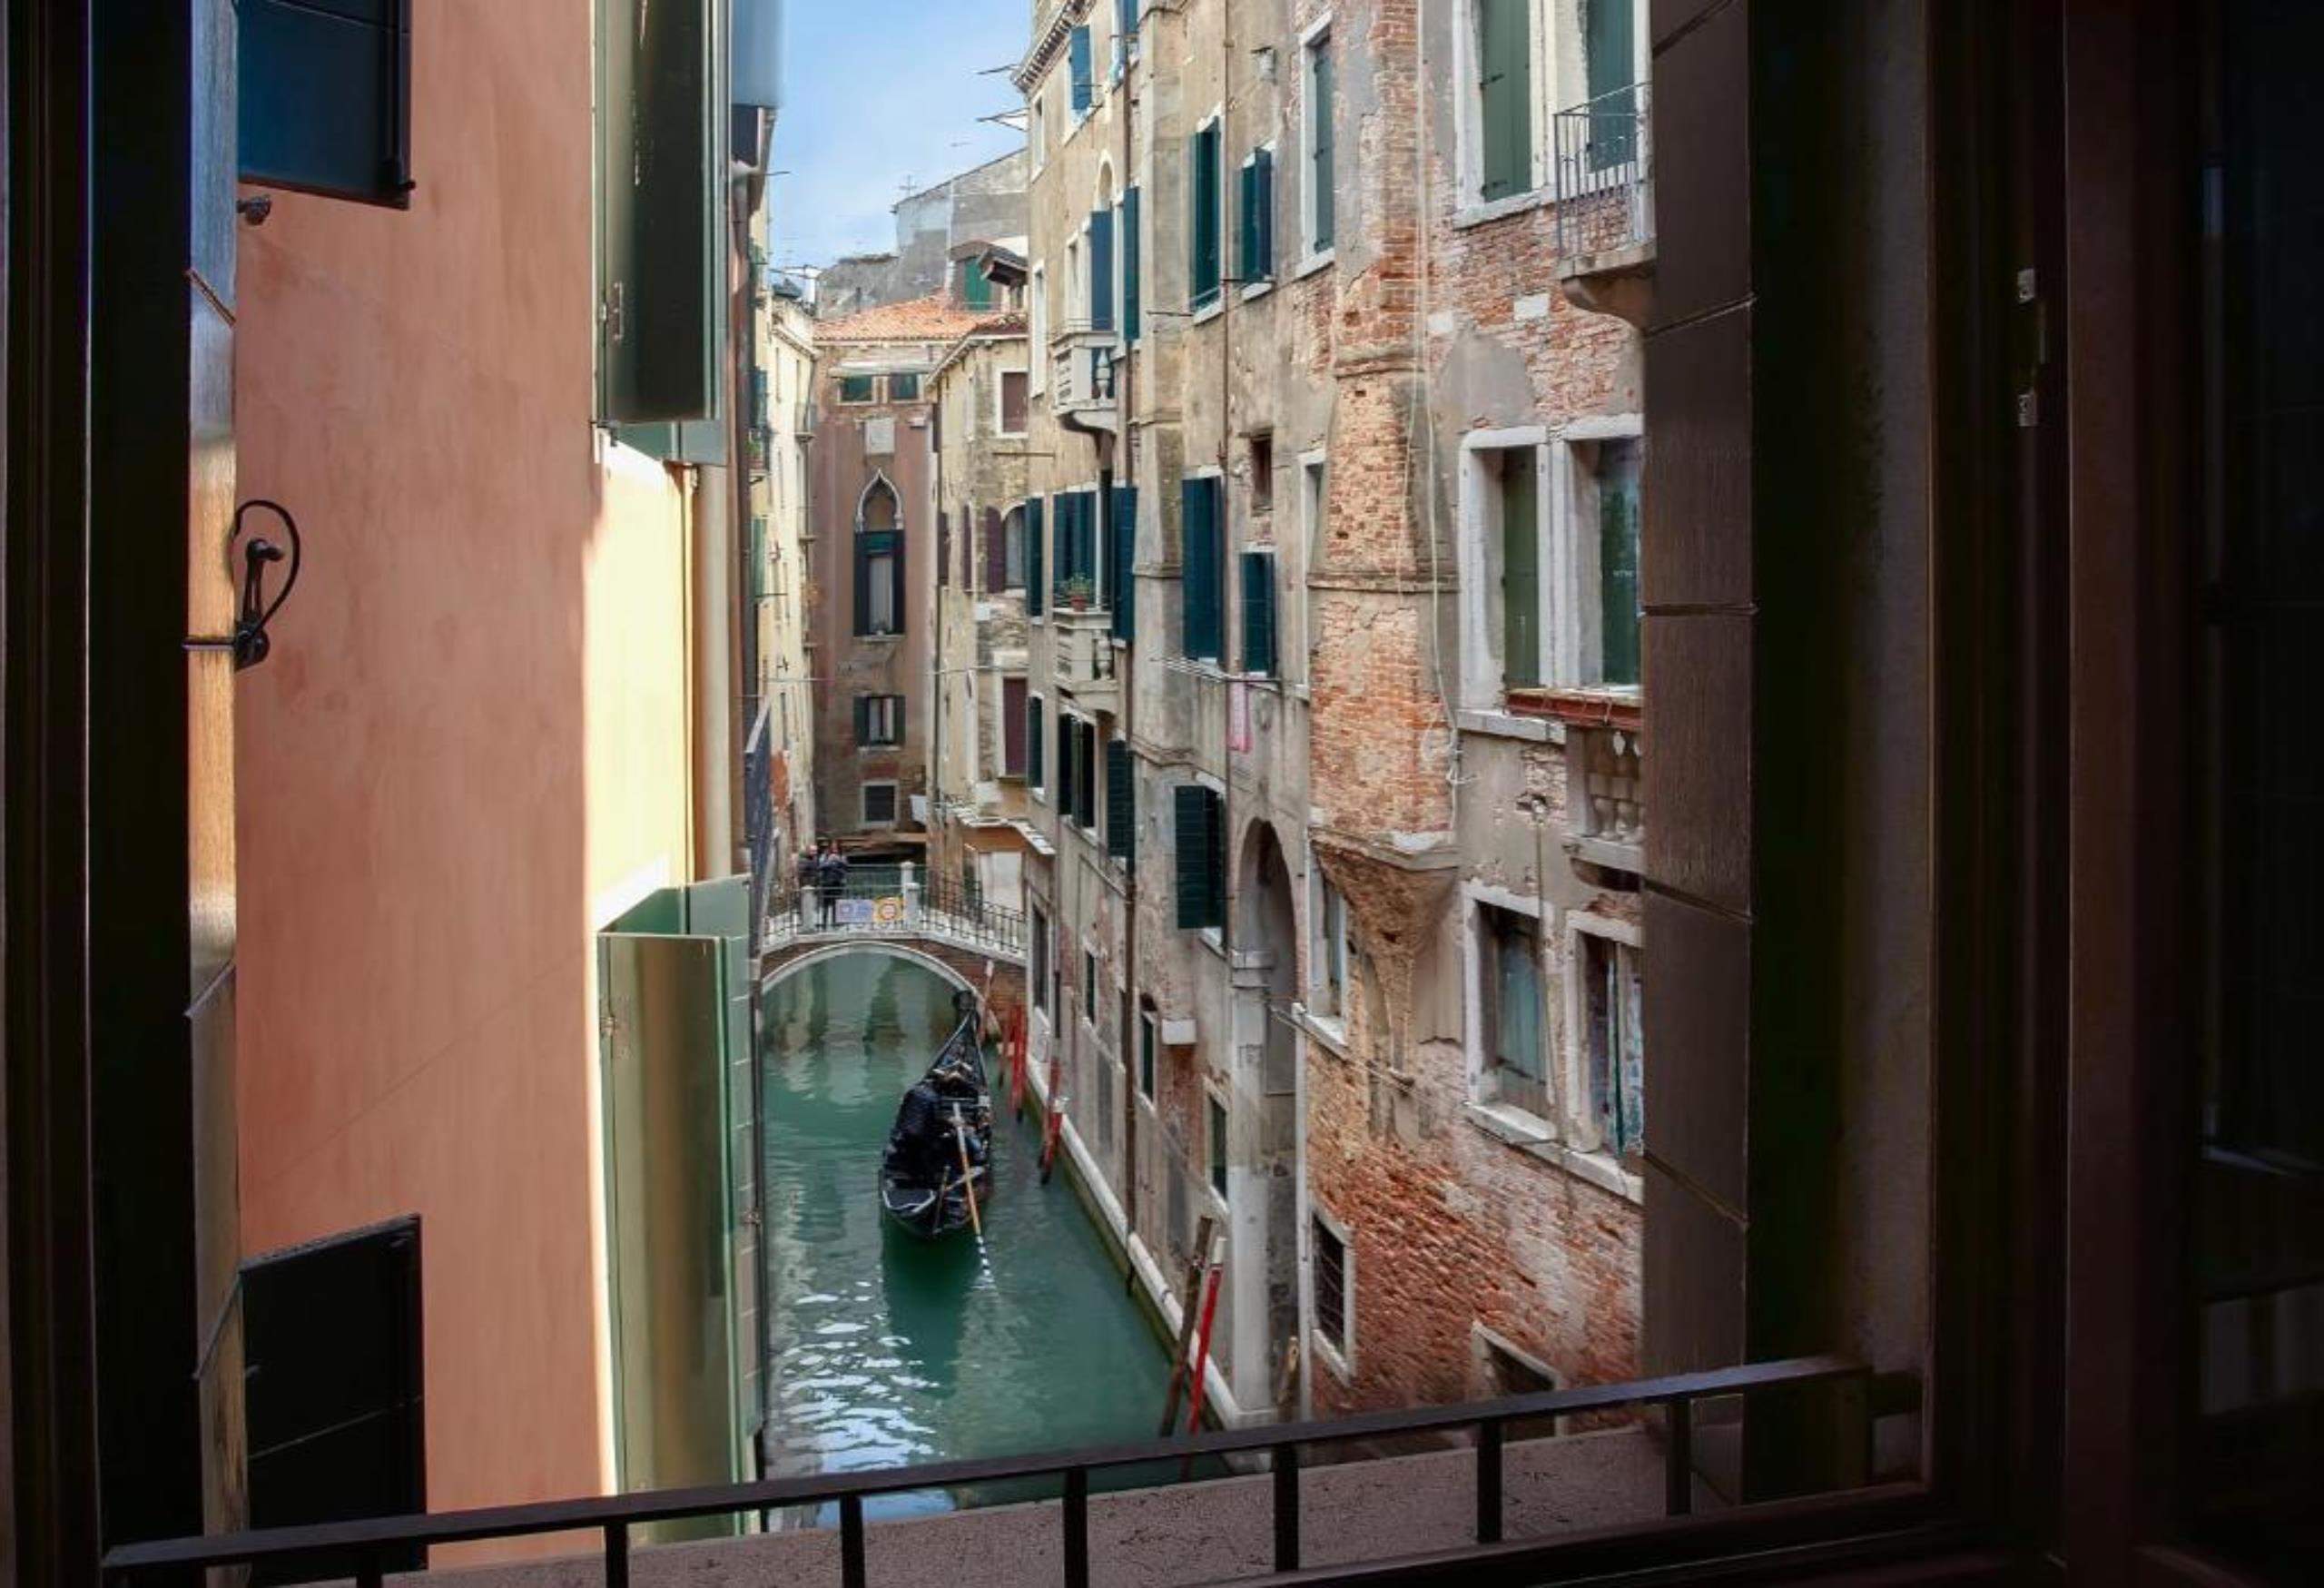 輝煌威尼斯酒店–星級酒店系列,Splendid Venice - Starhotels Collezione,威尼斯住宿,威尼斯住宿安全,威尼斯 住哪裡 好,威尼斯住宿攻略